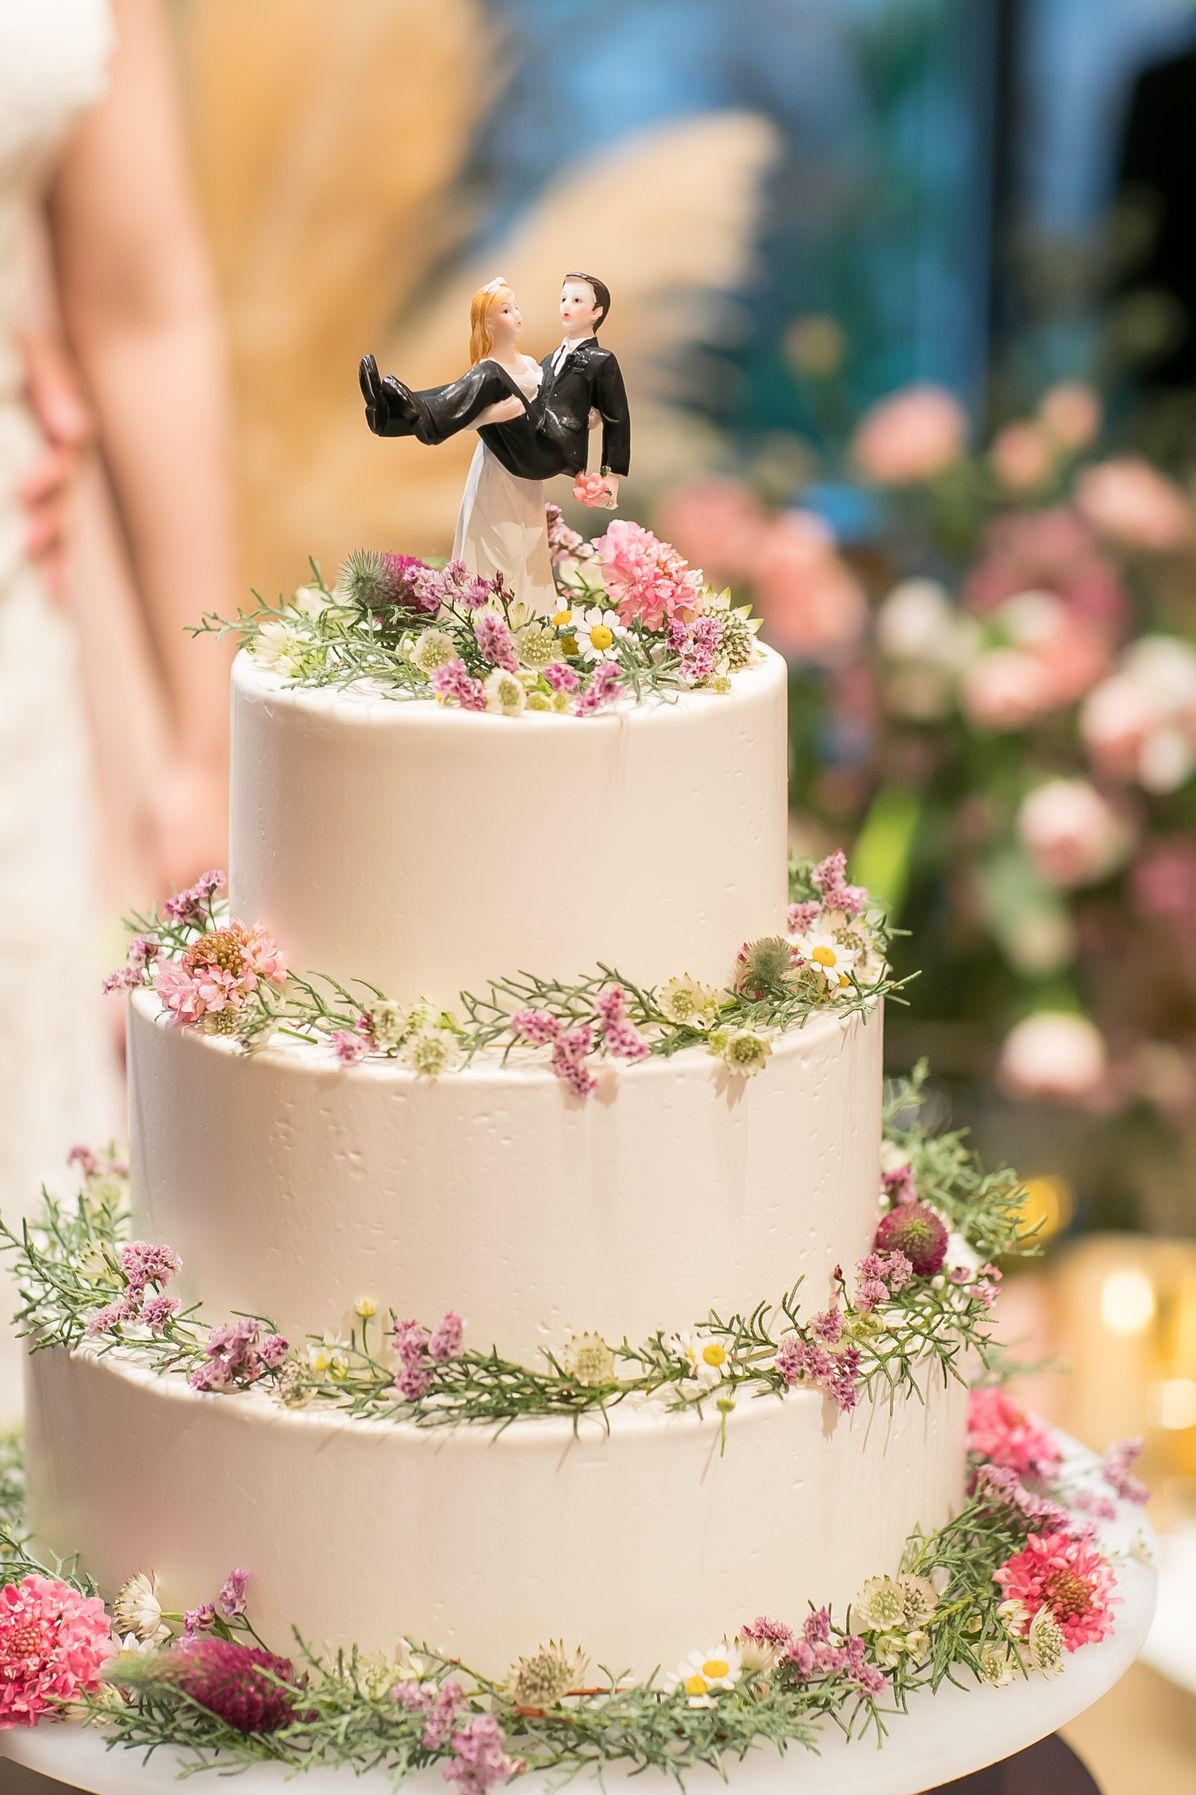 ナチュラル感が素敵 グリーンや花を使ったウェディングケーキ10選 結婚式準備はウェディングニュース